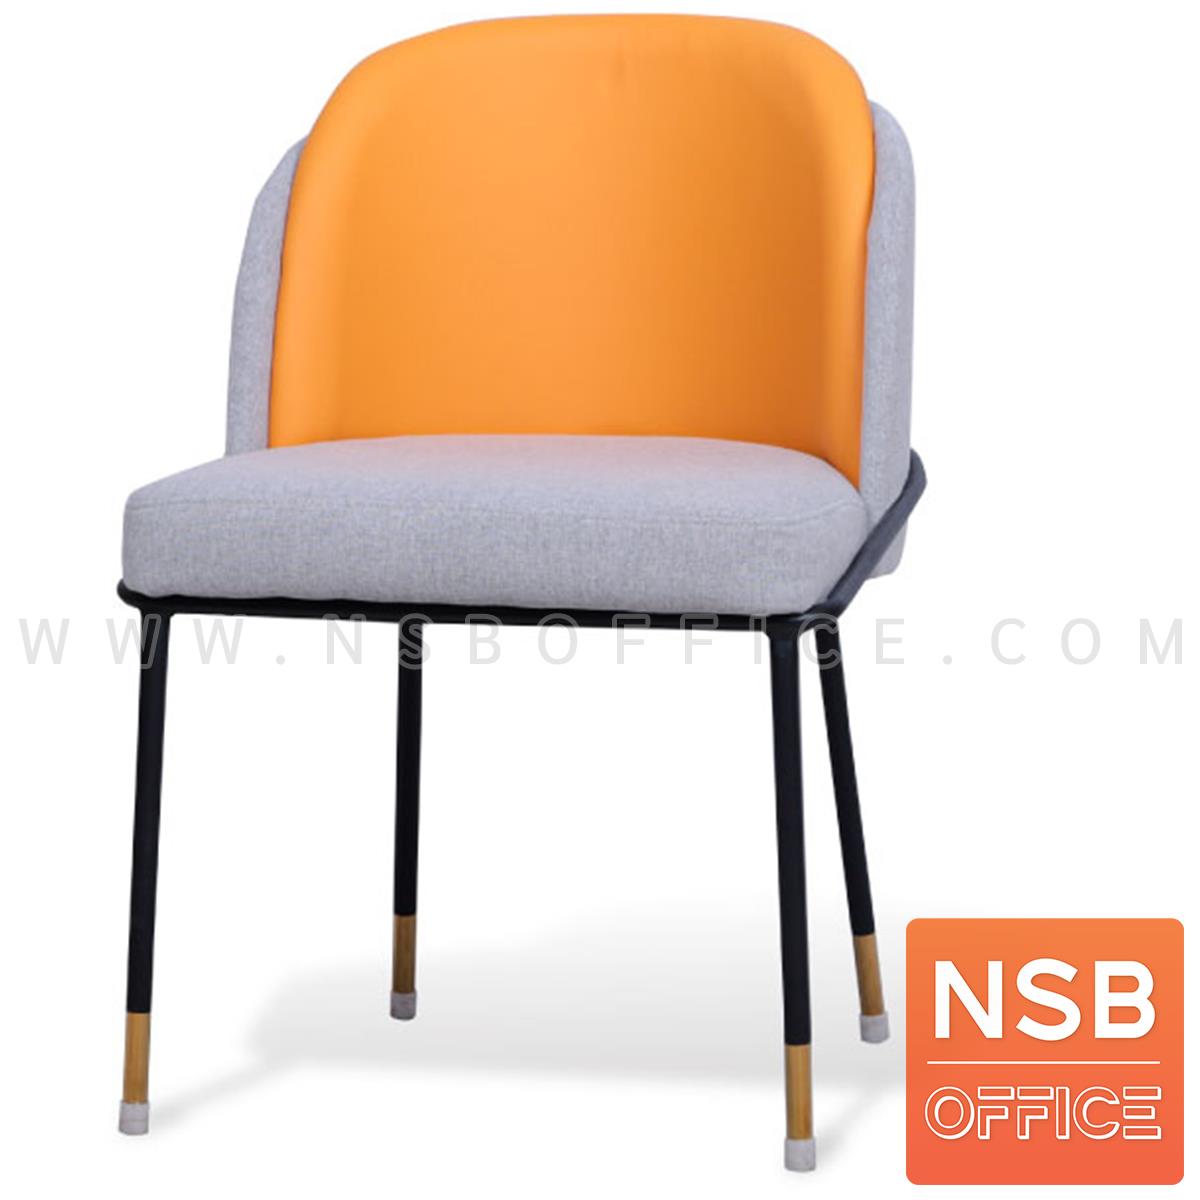 B29A386:เก้าอี้โมเดิร์นหุ้มผ้า รุ่น Carrot (แครรอท)  โครงขาเหล็ก